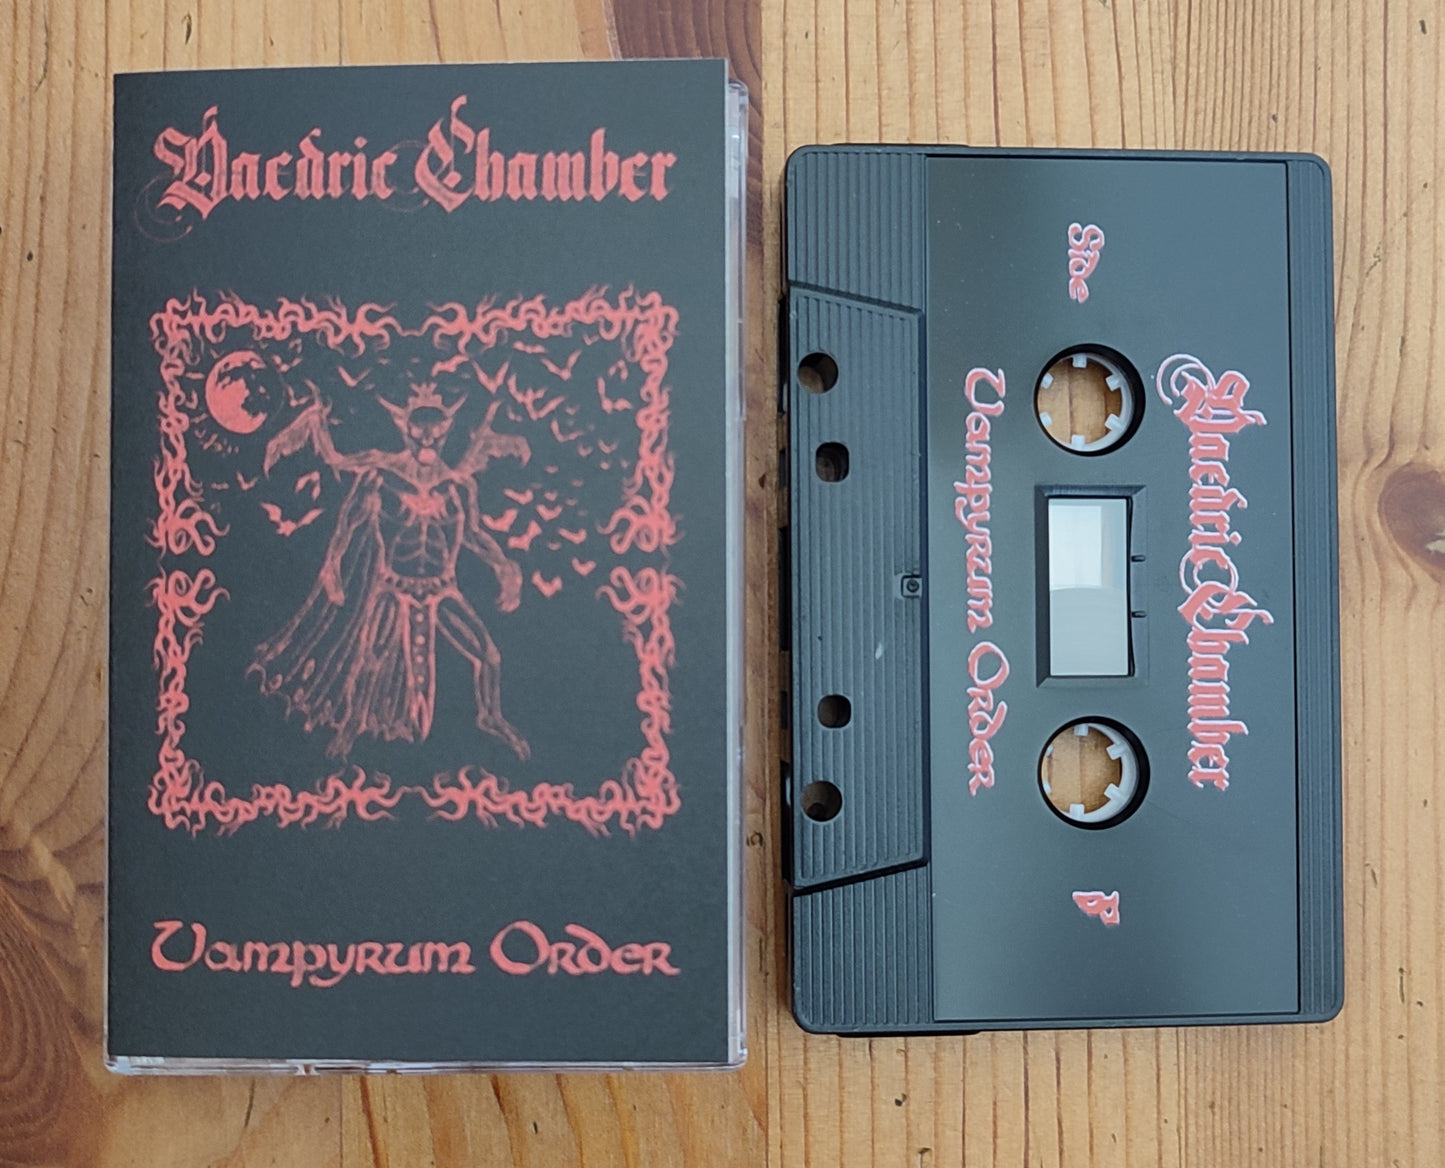 Daedric Chamber (US) "Vampyrum Order" - Pro tape